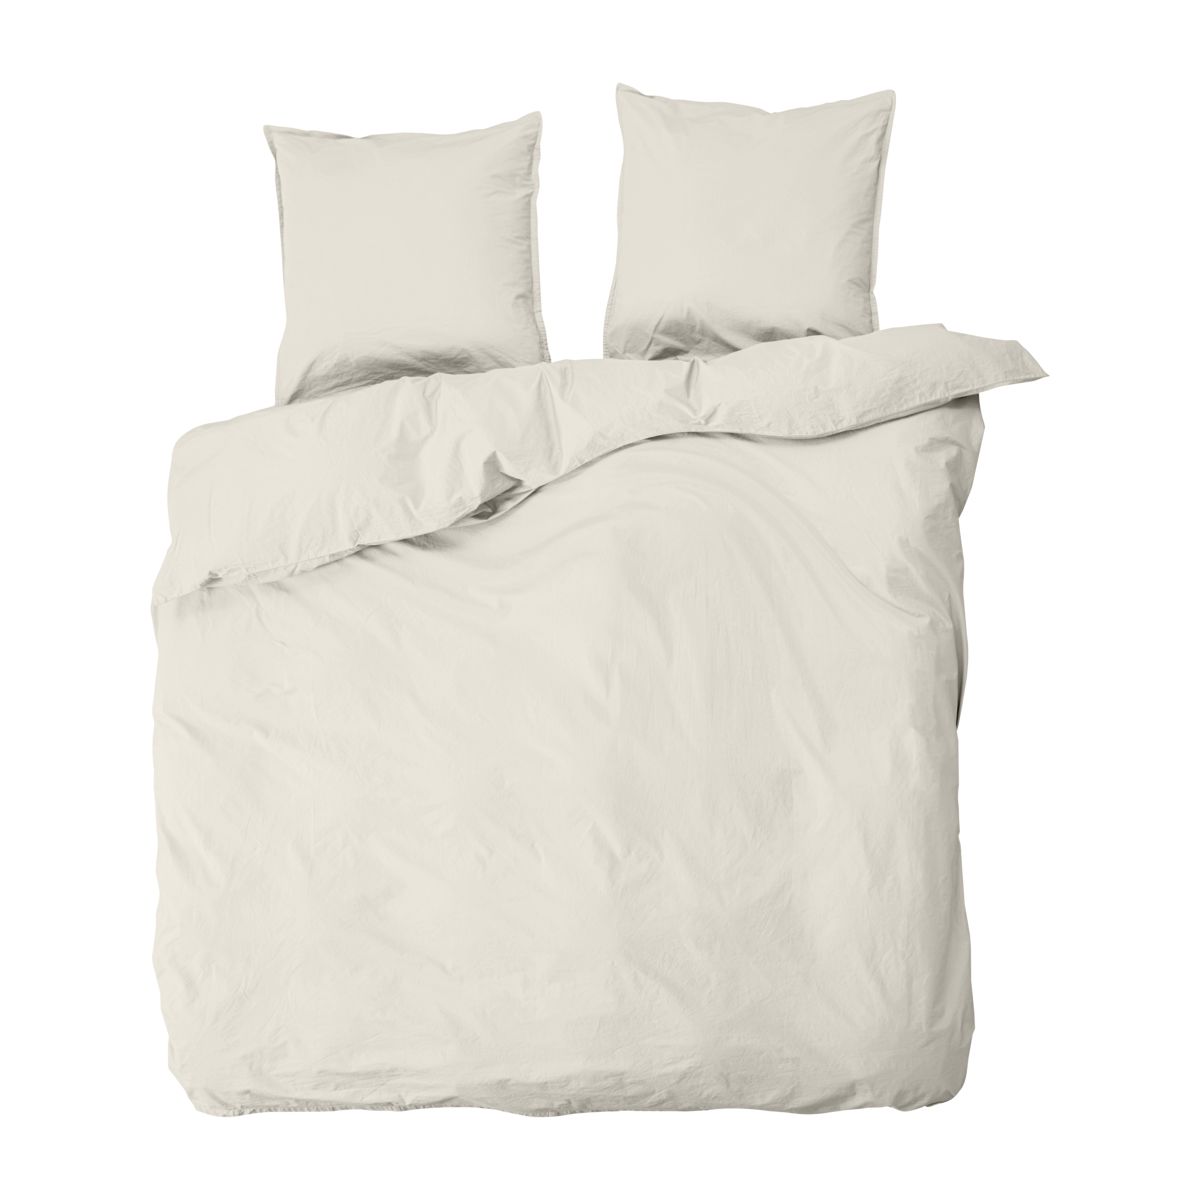 Dobbelt sengesæt, Ingrid, Shell – 200×220